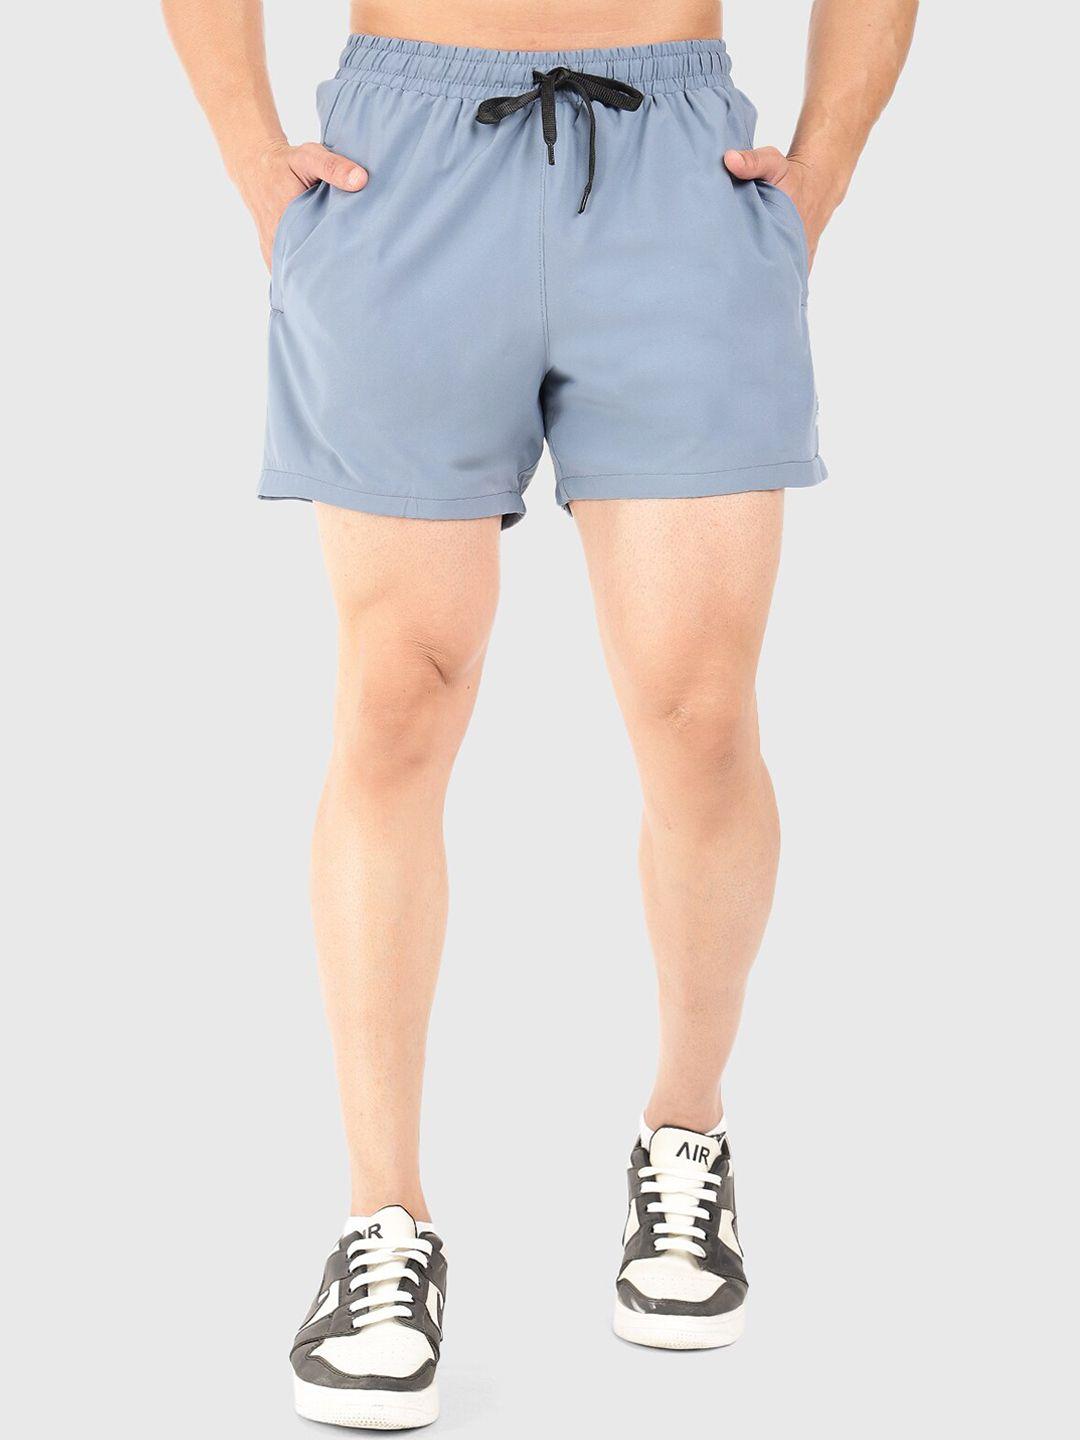 fuaark men mid-rise dri-fit sports shorts